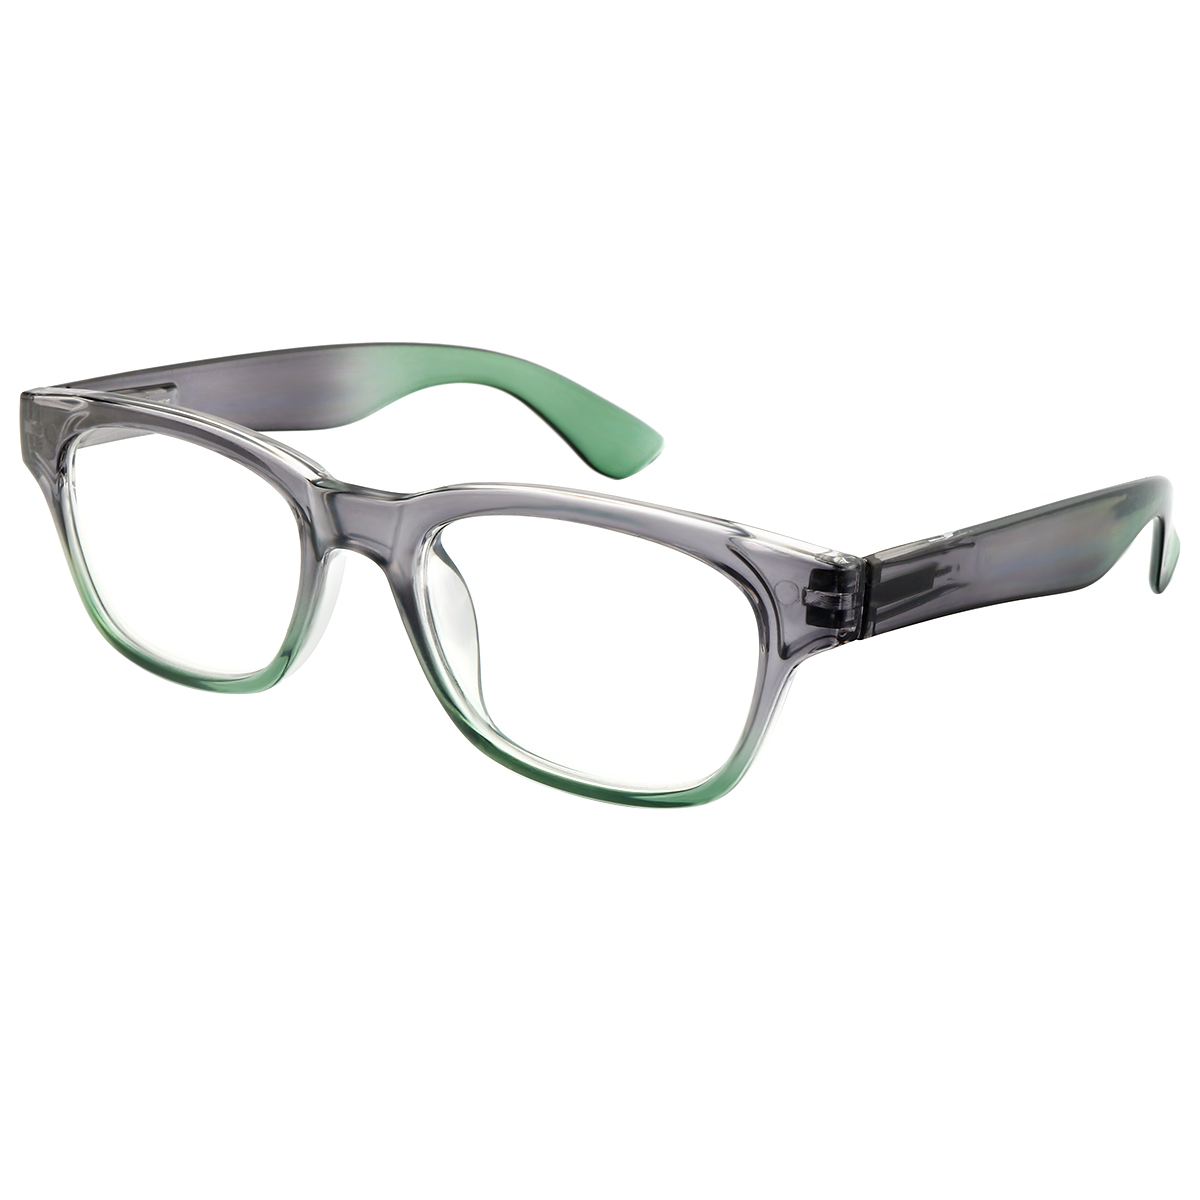 Amplify - Square Black-Green Reading Glasses for Men & Women